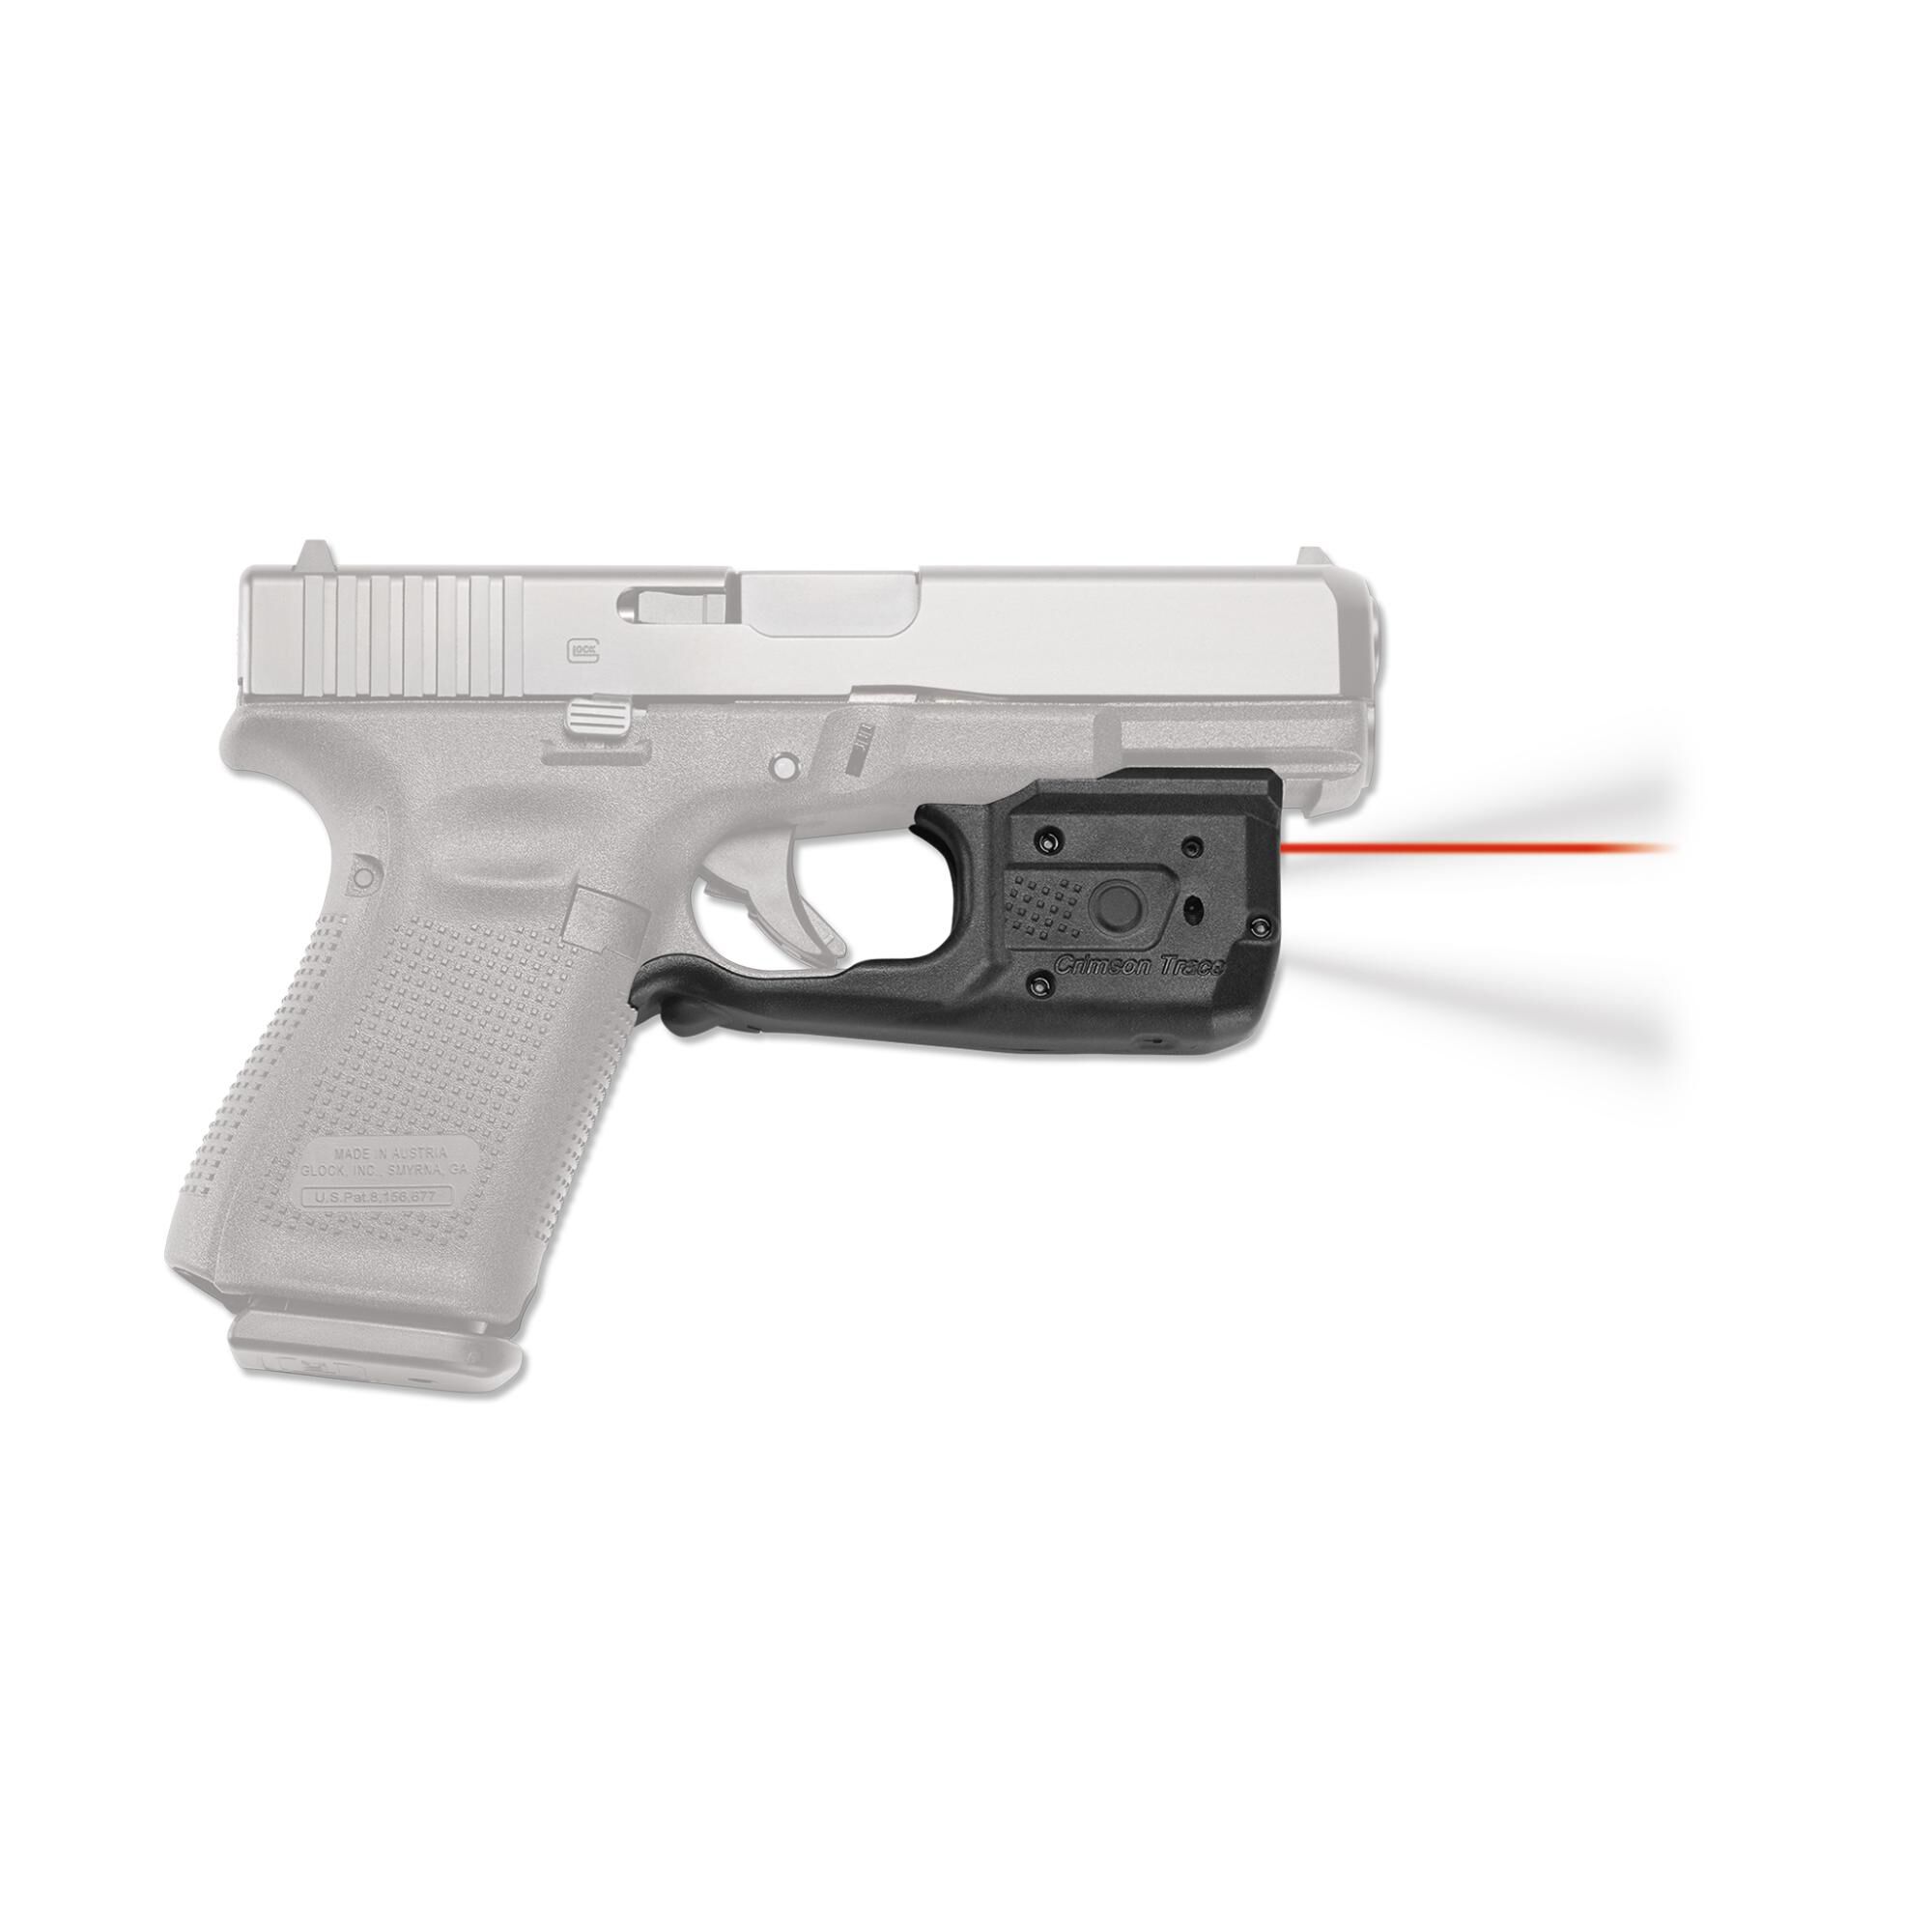 Crimson Trace Full Compact Trigger Laserguard Pro Glock 17/19 Red Laser Gen 3 4 for sale online 